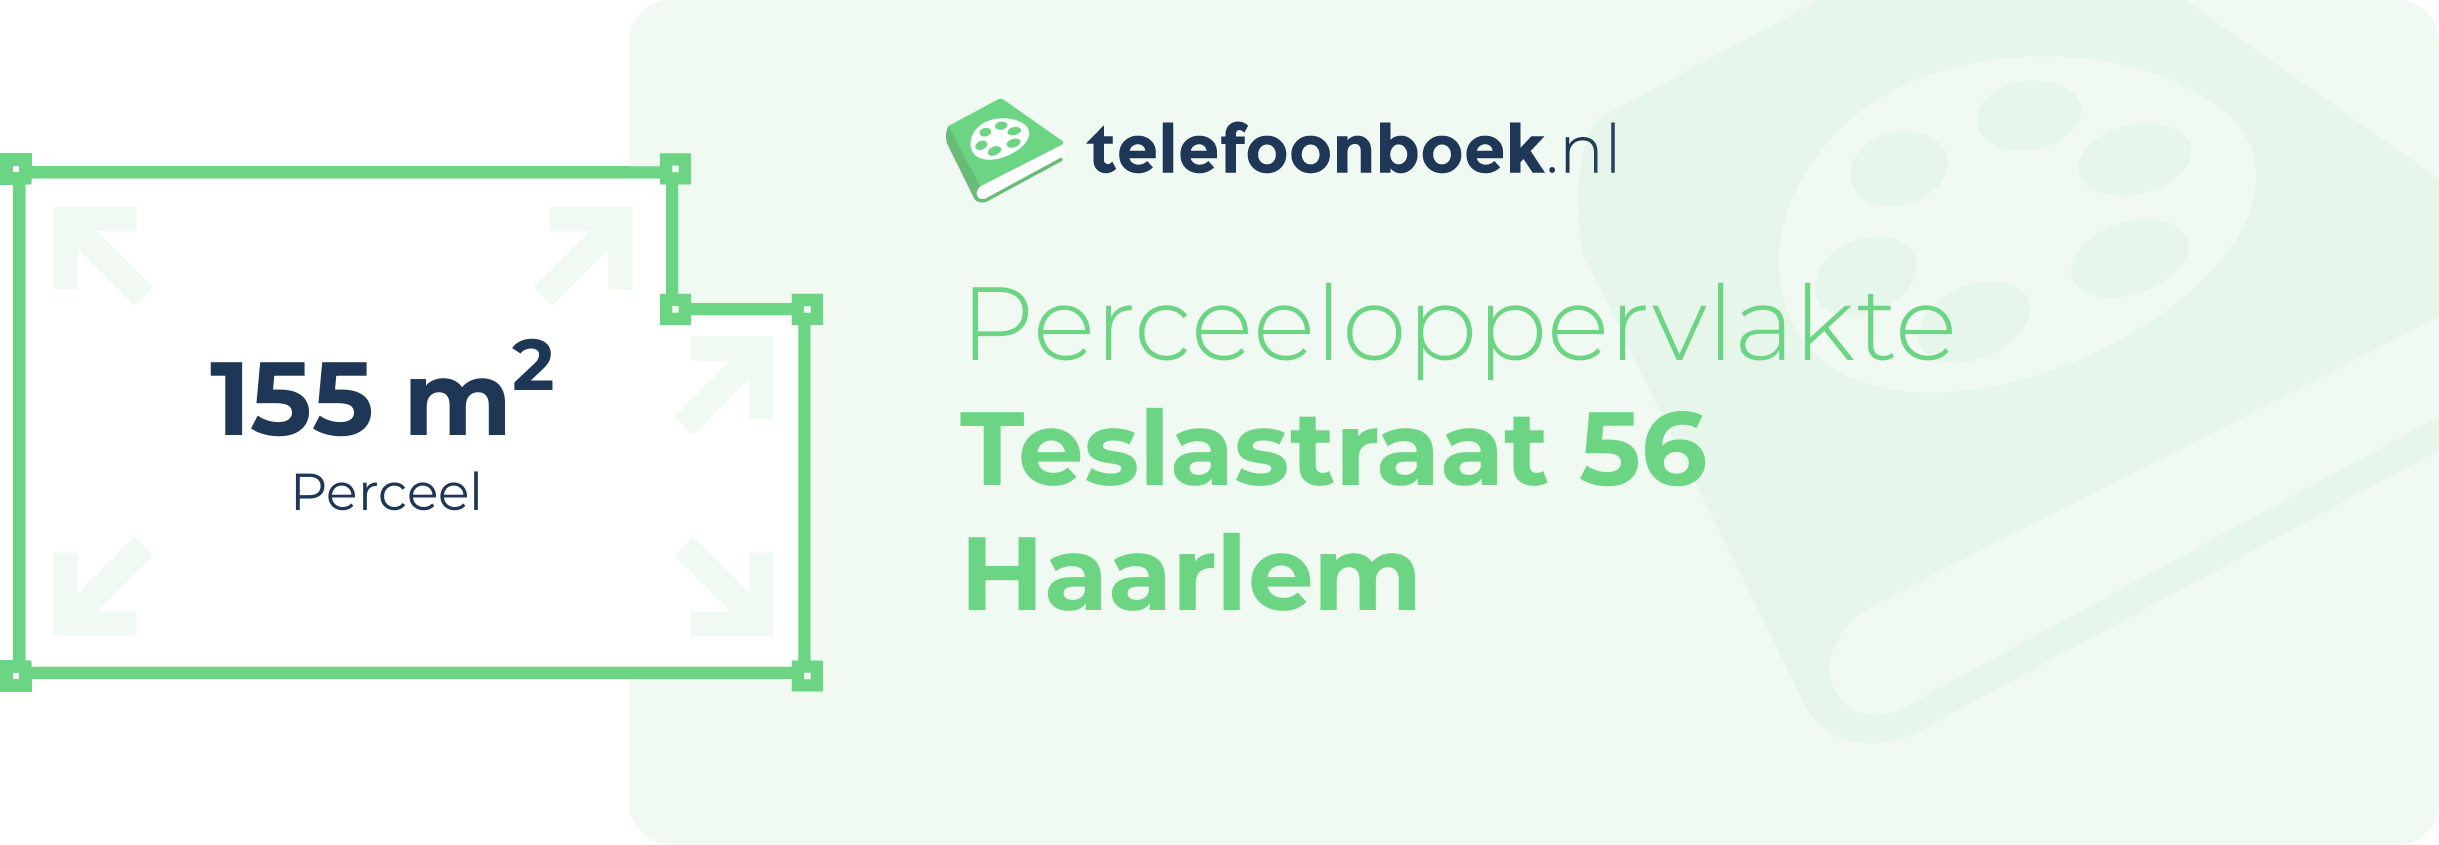 Perceeloppervlakte Teslastraat 56 Haarlem